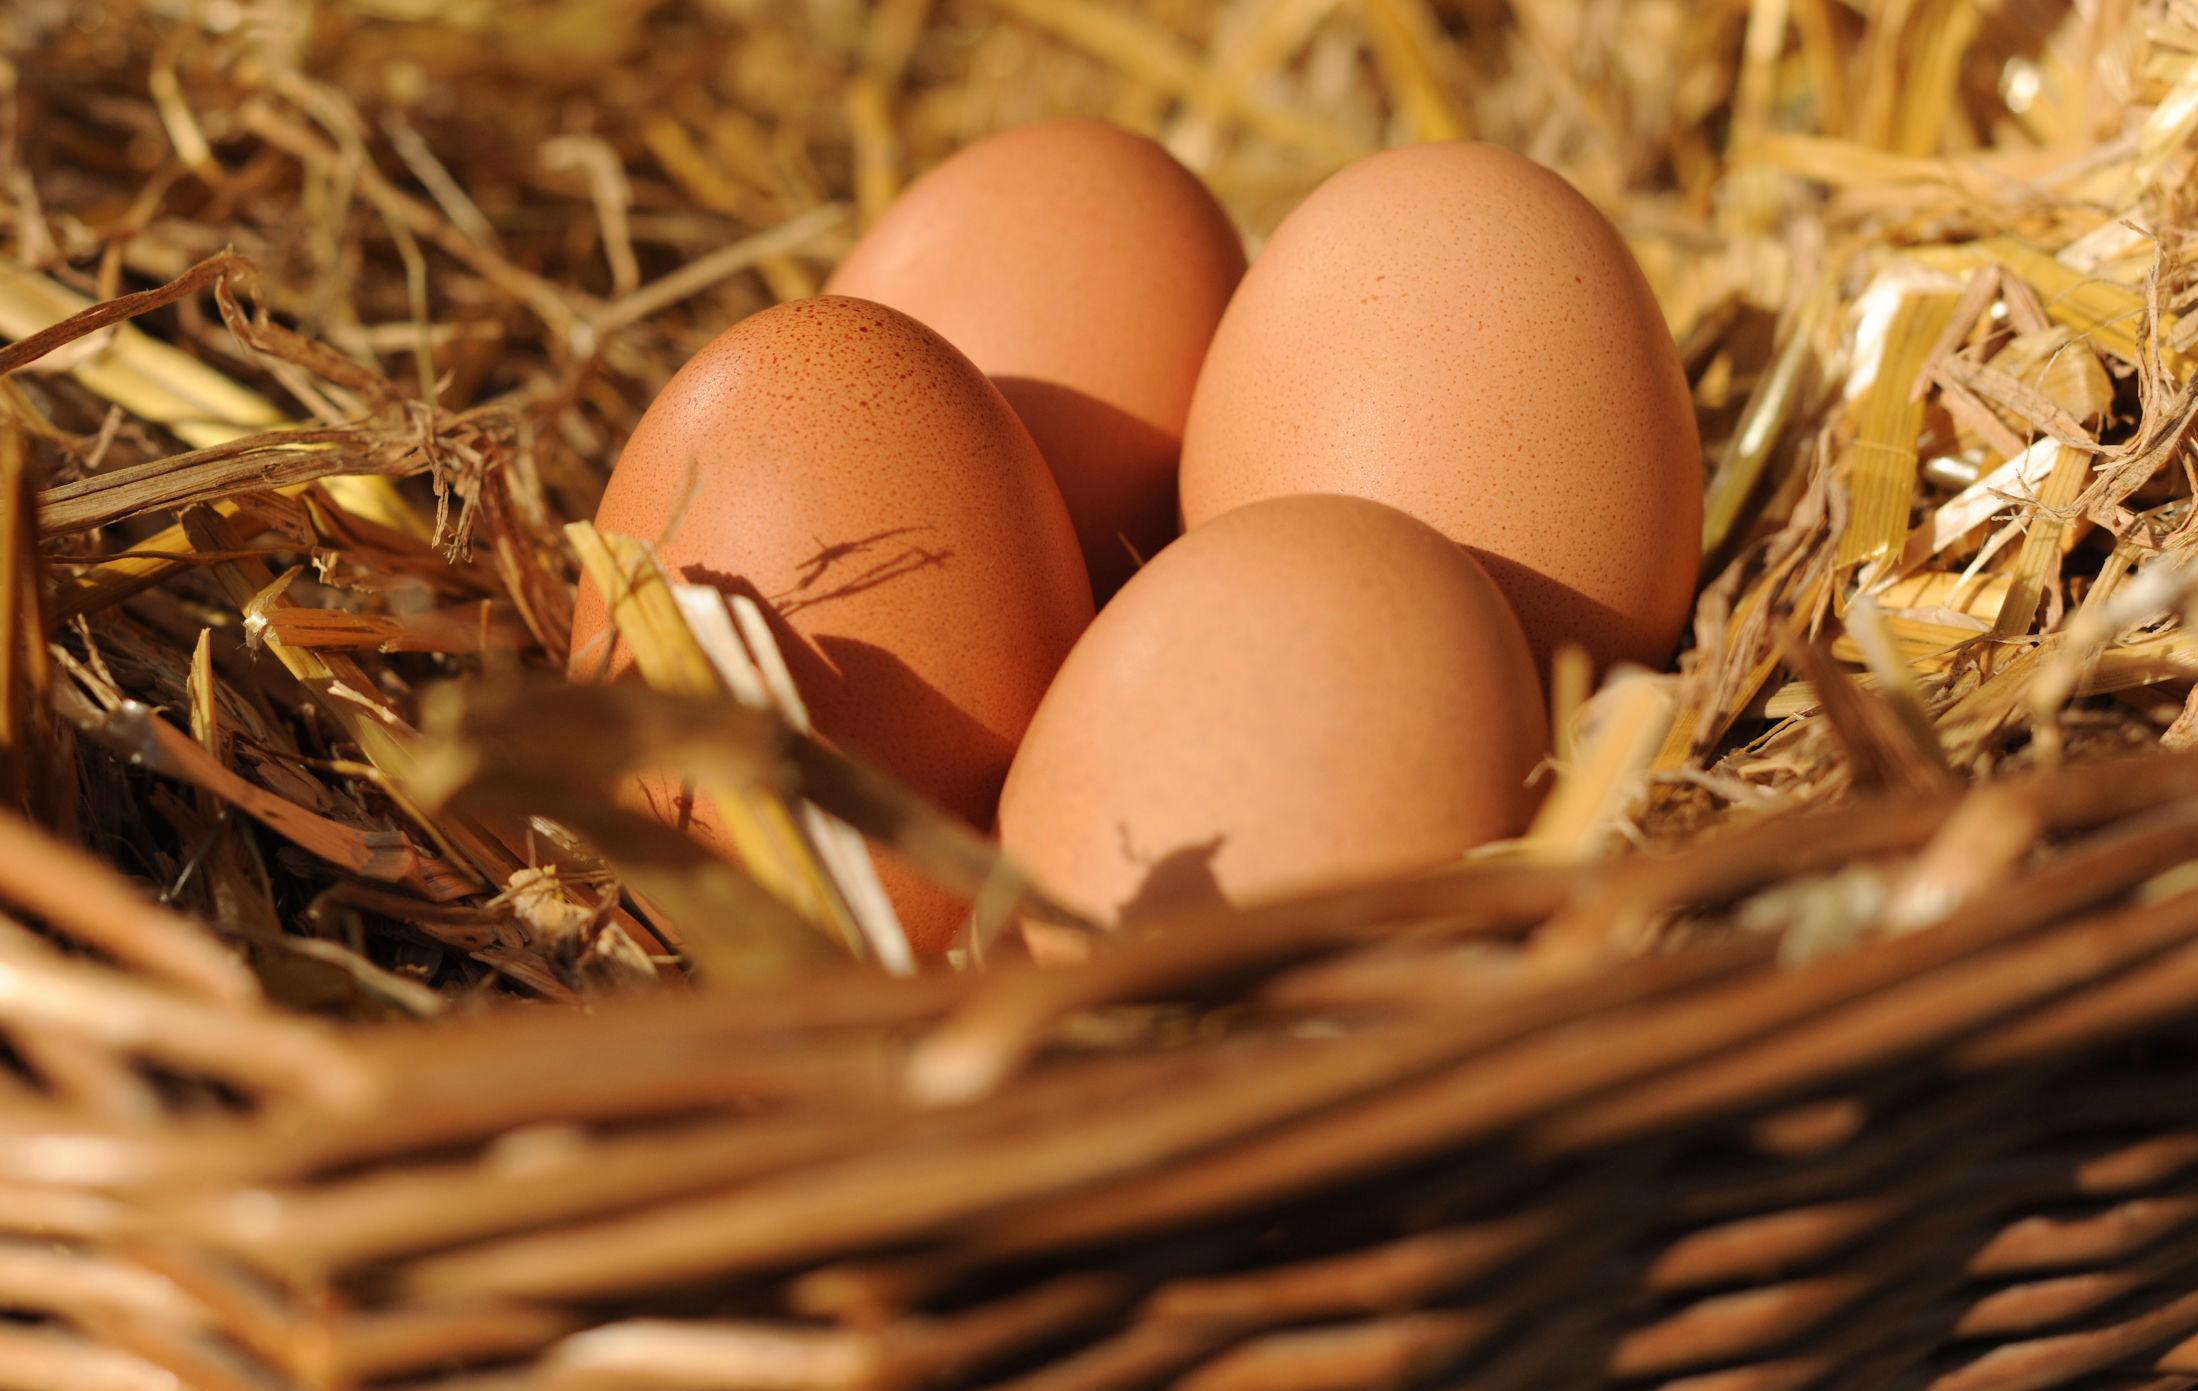 EGENPRODUKSJON: Påsken er tid for egg, og mange flere enn tidligere år har trolig tenkt at de skulle skaffe seg egne høner for å håndtere årets produksjon. Illustrasjonsfoto: Frank May / NTB scanpix.